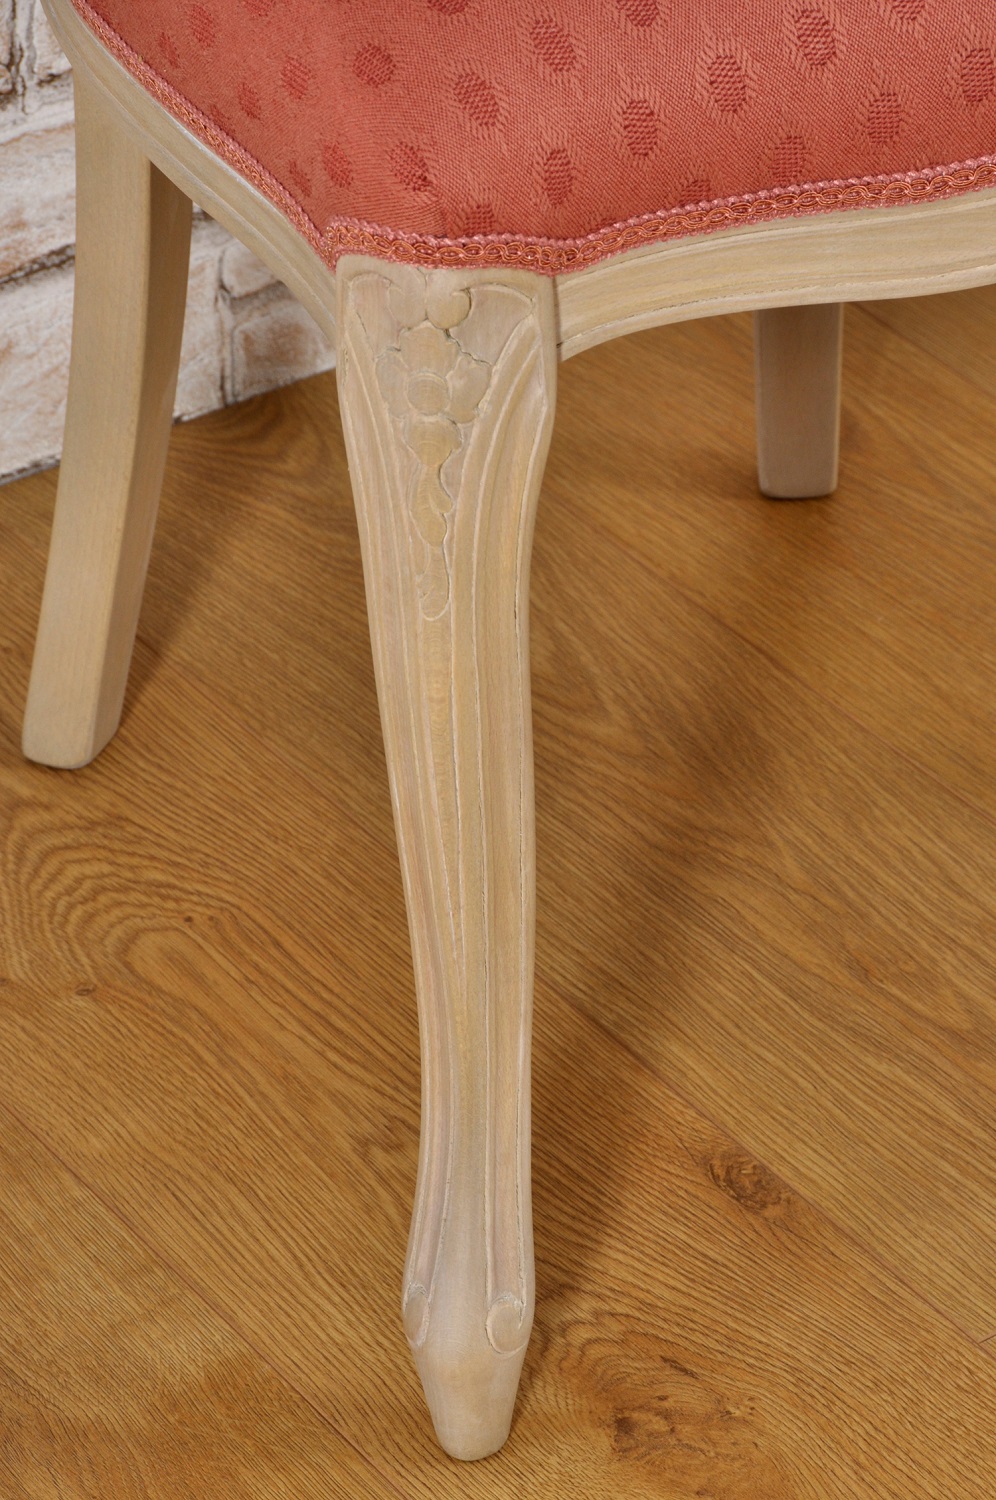 lussuosa gamba sagomata e intagliata a mano della sedia sbiancata nocciola naturale in legno di faggio raffinata sedia costruita a mano per importanti ingressi e prestigiose sale da pranzo